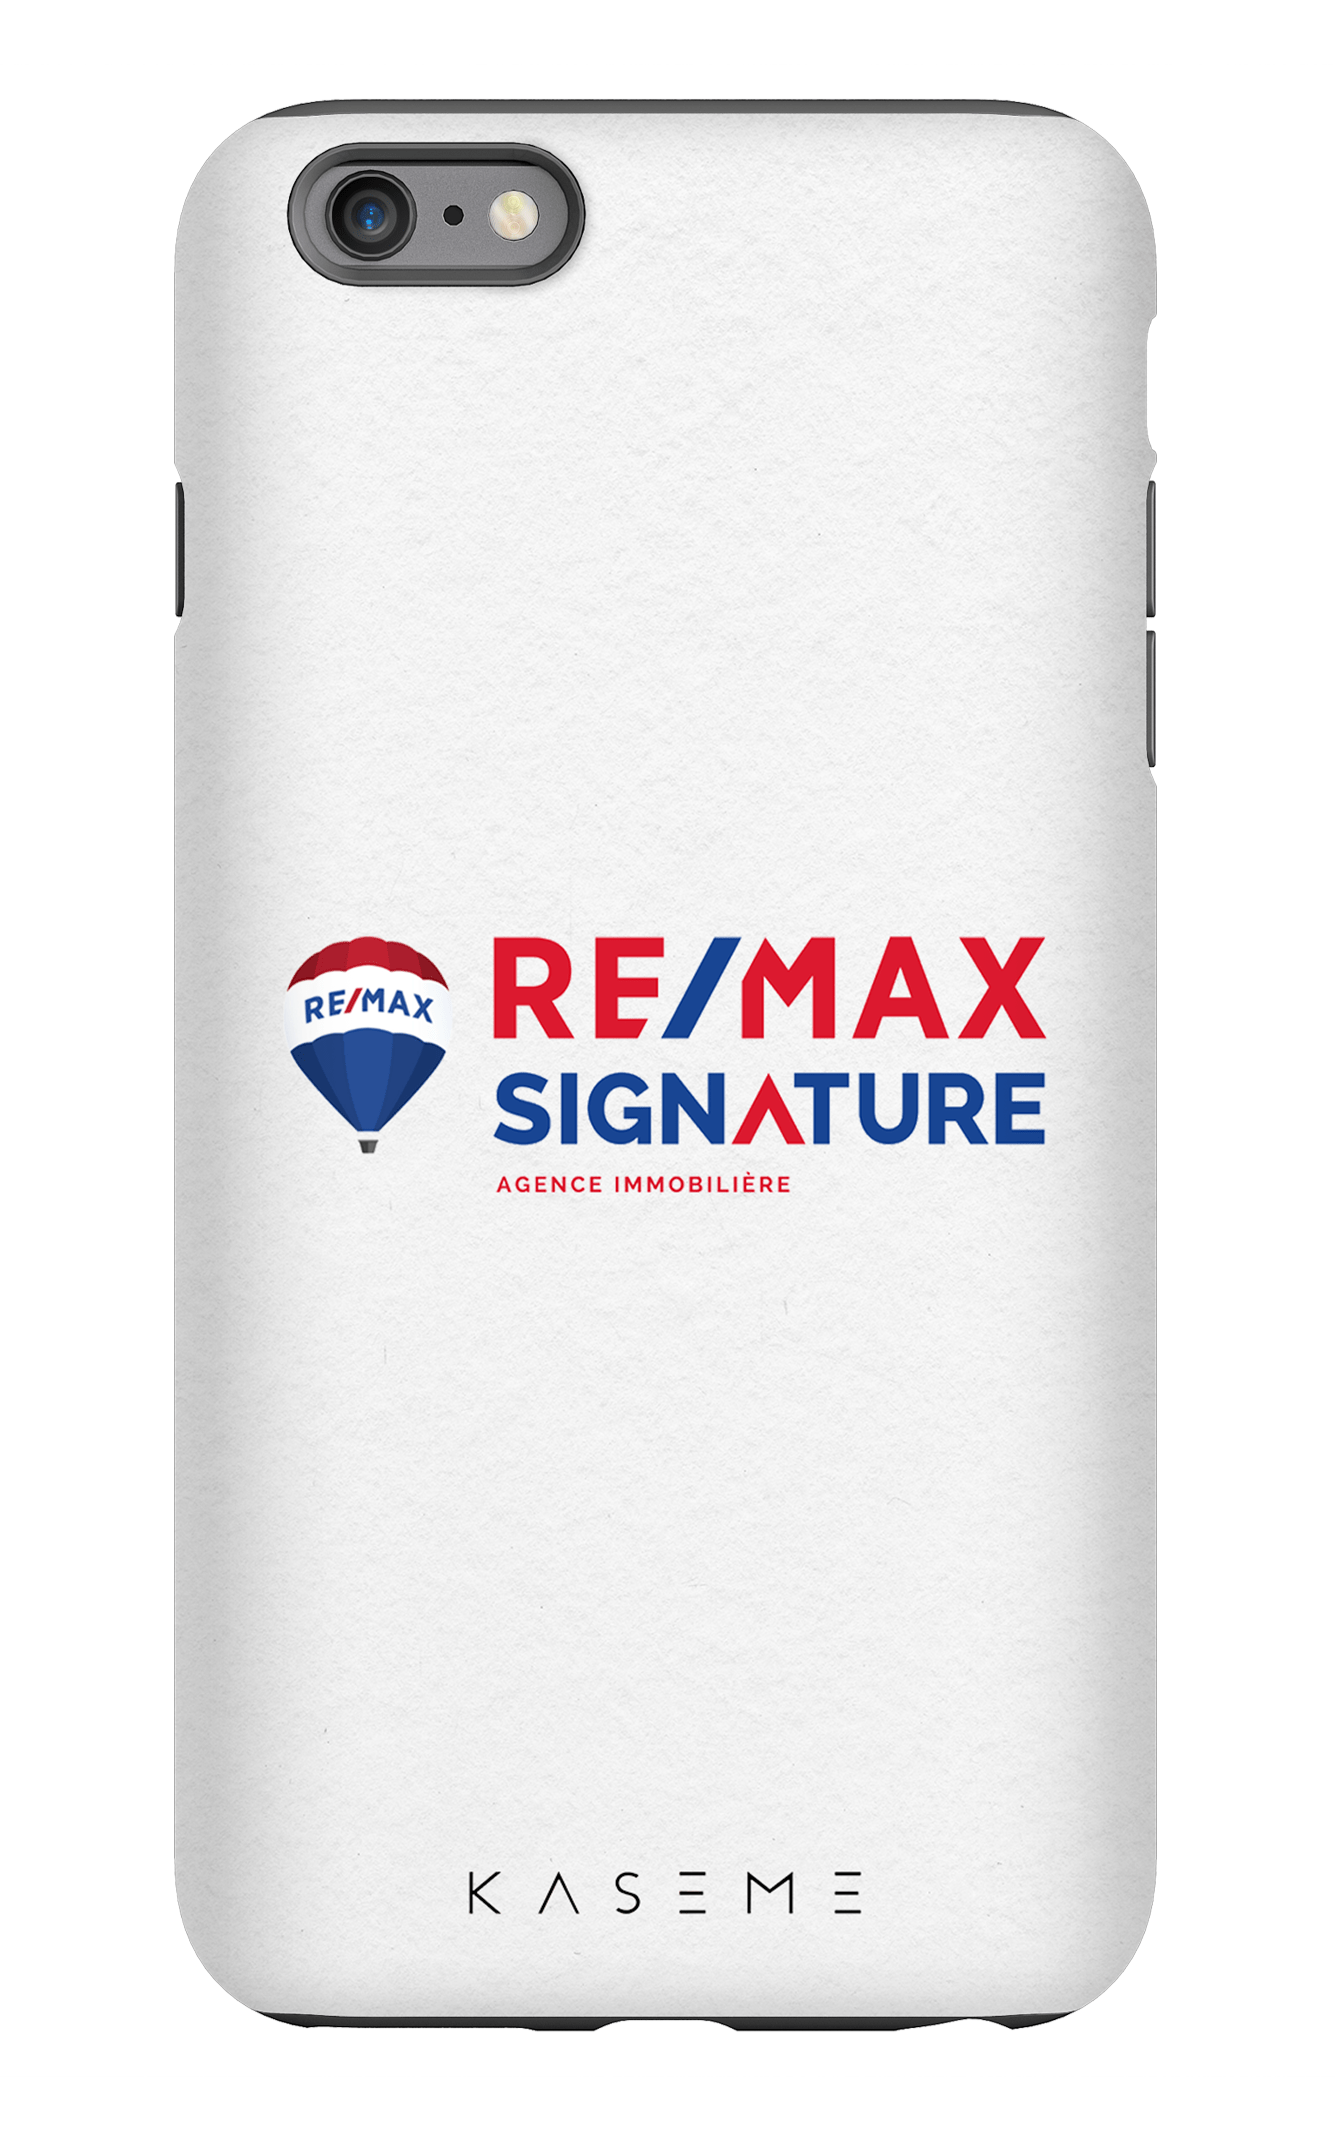 Remax Signature Blanc - iPhone 6/6s Plus